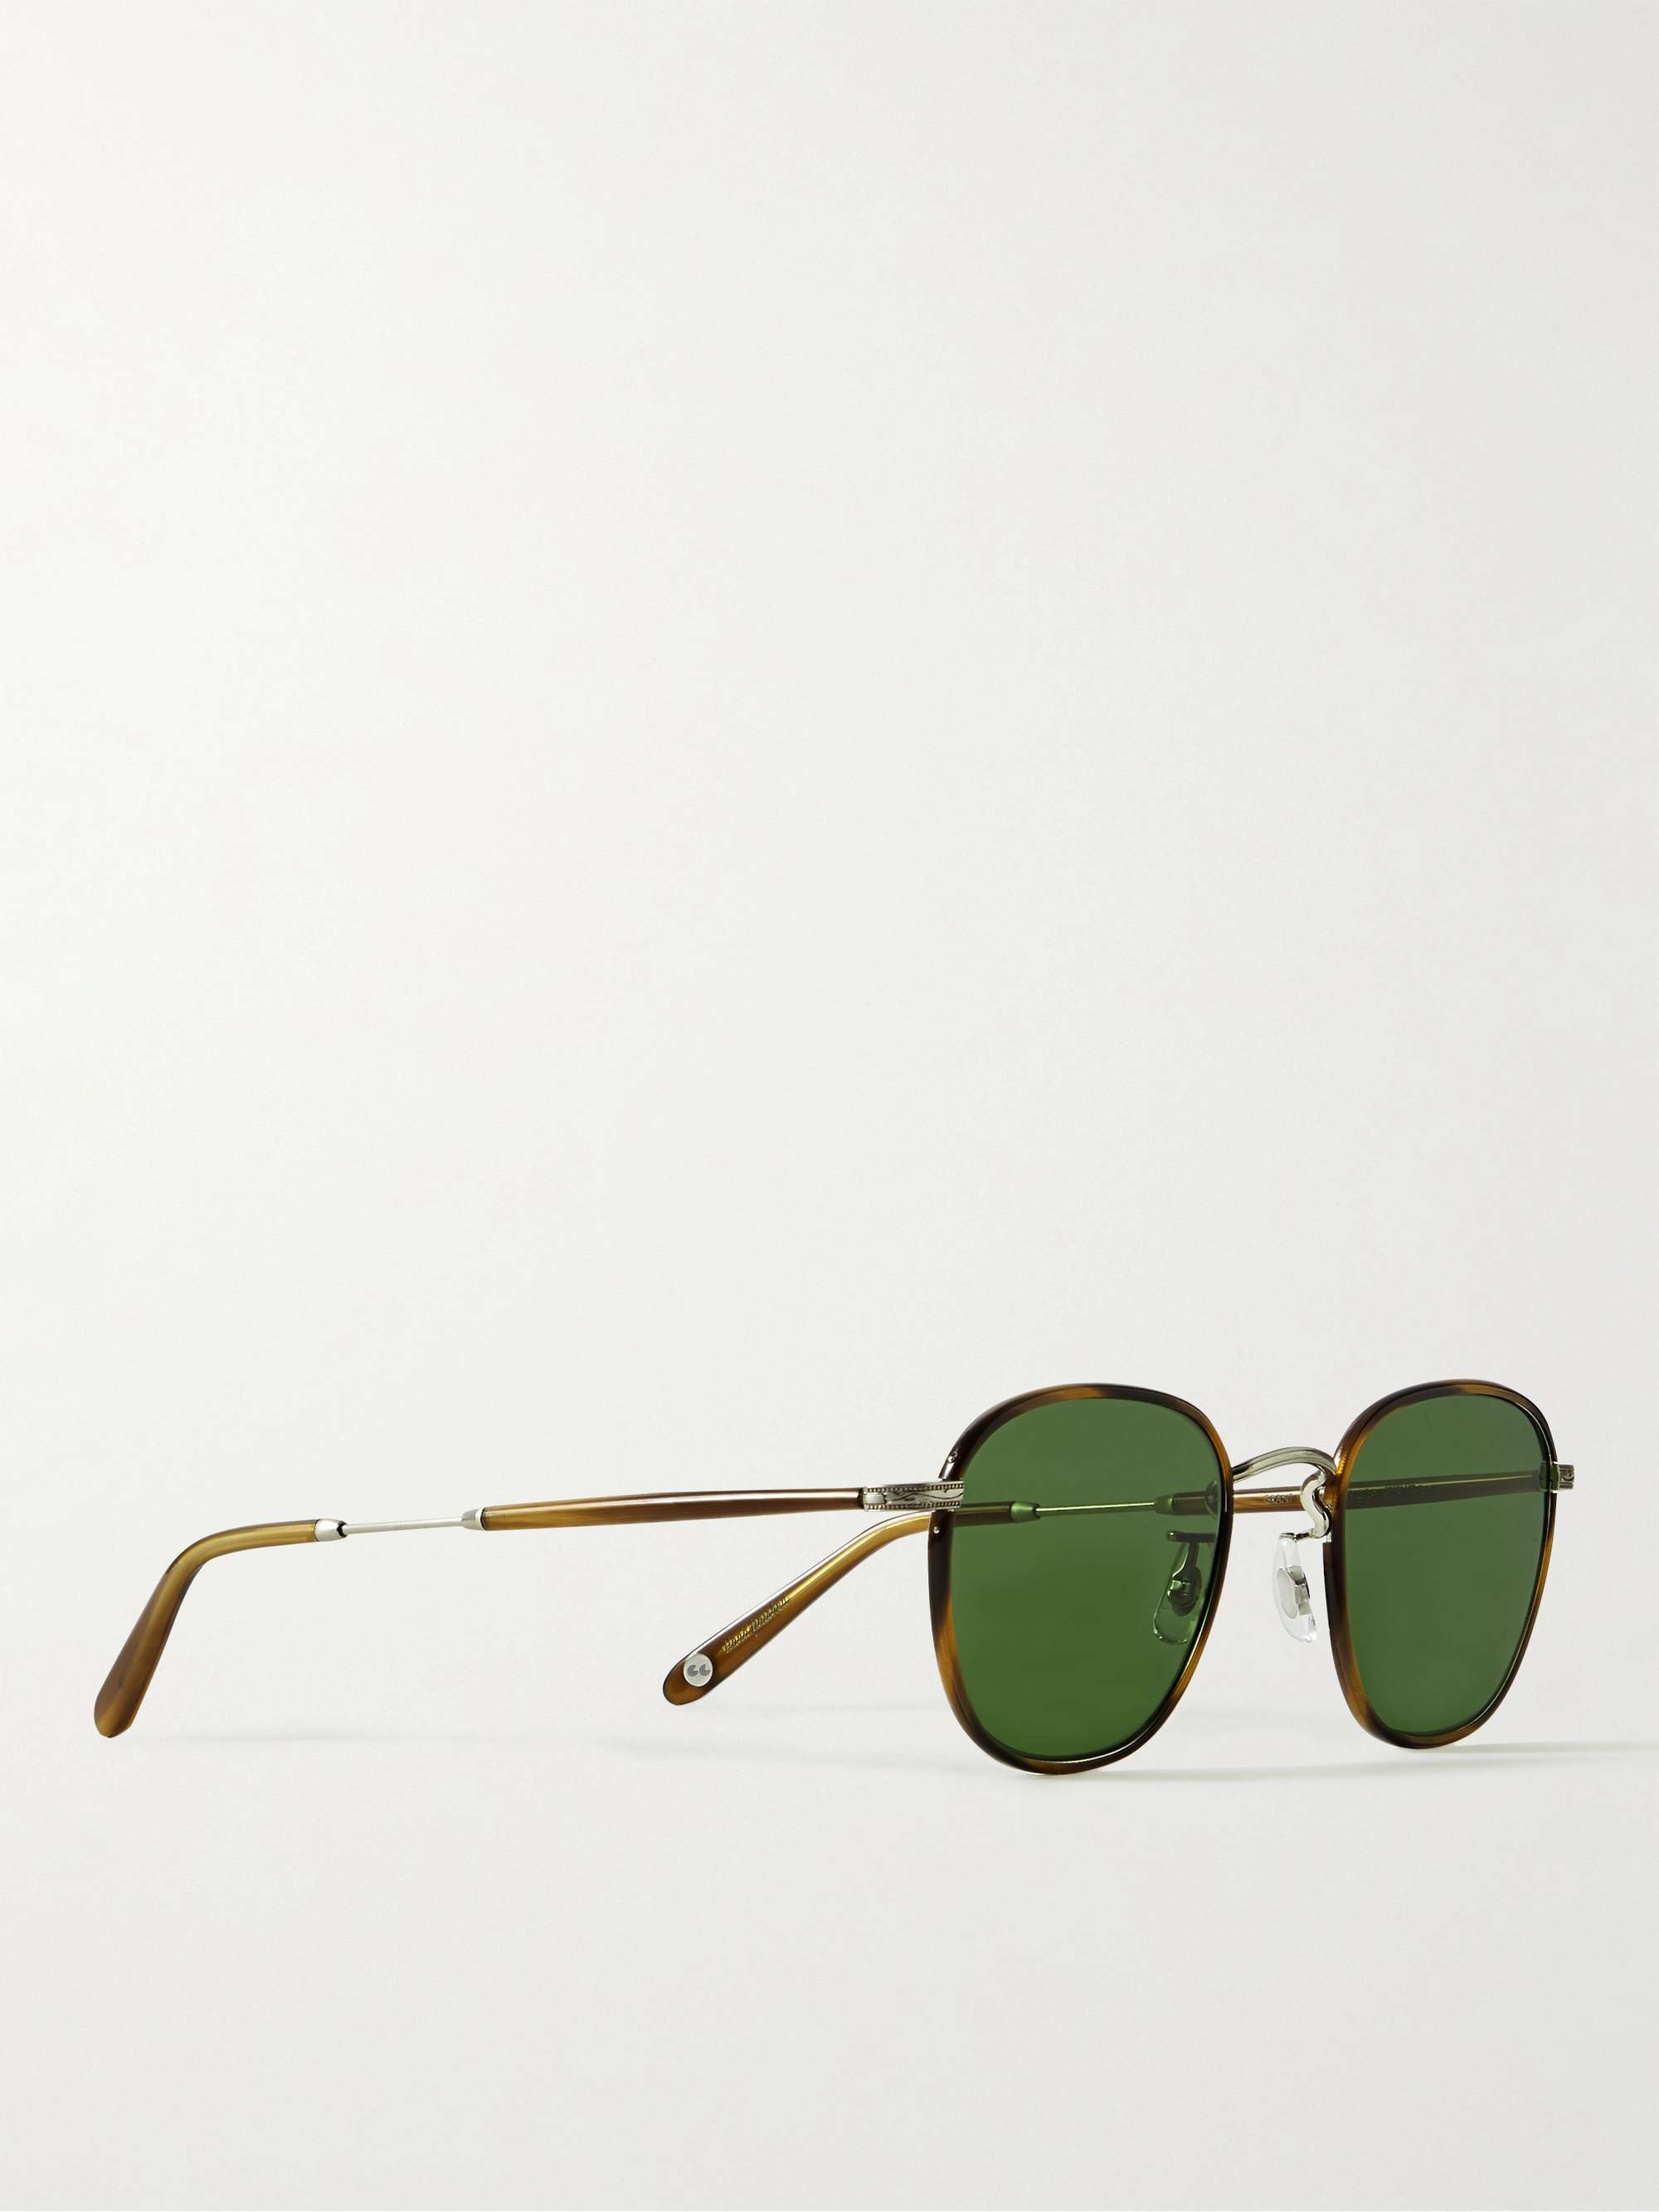 GARRETT LEIGHT CALIFORNIA OPTICAL Grant D-Frame Tortoiseshell Acetate and Stainless Steel Sunglasses